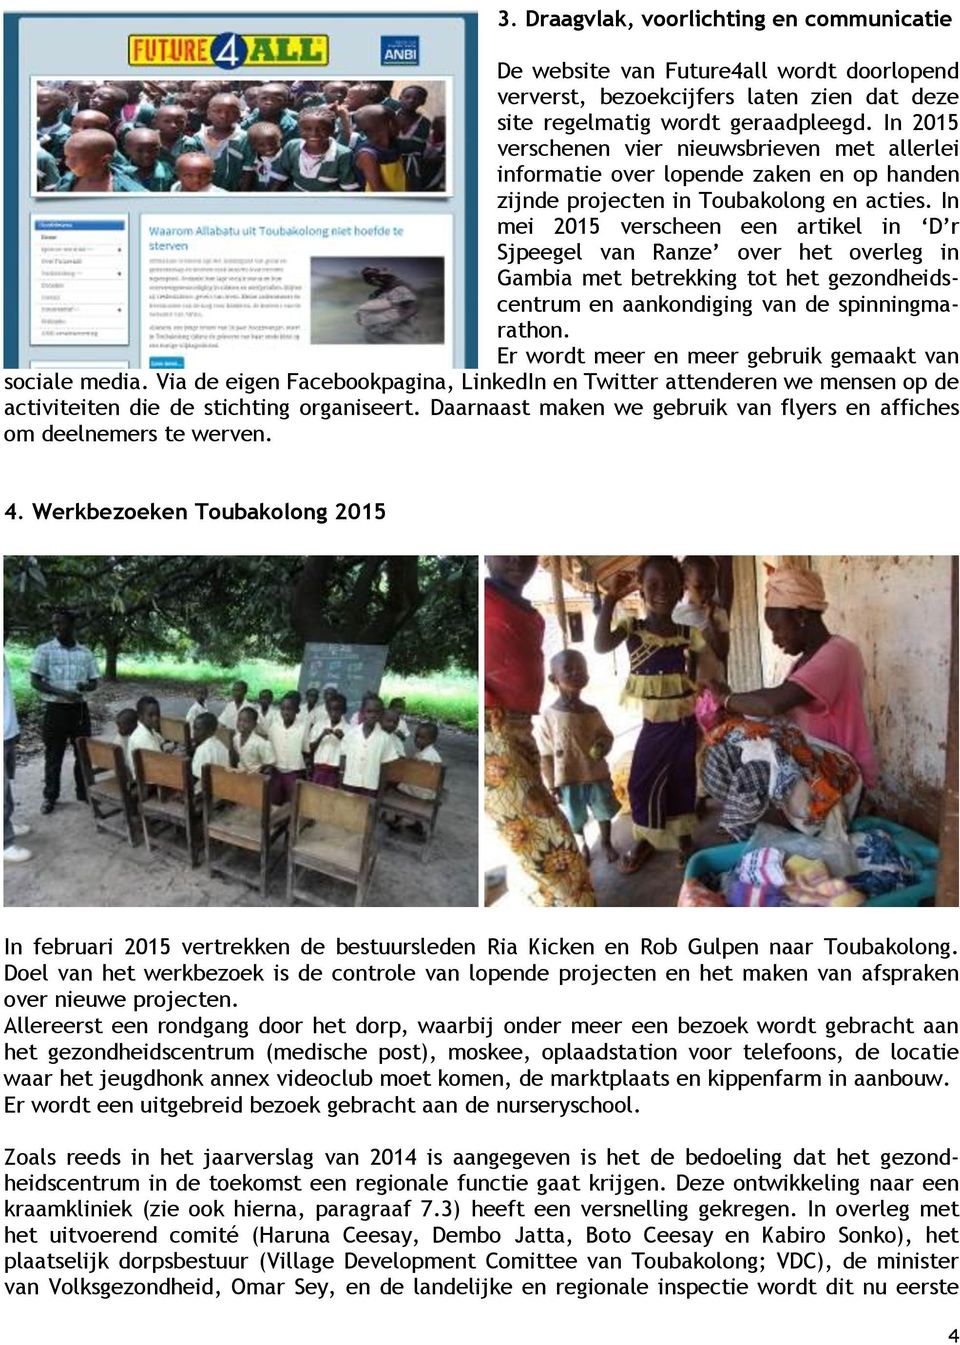 In mei 2015 verscheen een artikel in D r Sjpeegel van Ranze over het overleg in Gambia met betrekking tot het gezondheidscentrum en aankondiging van de spinningmarathon.